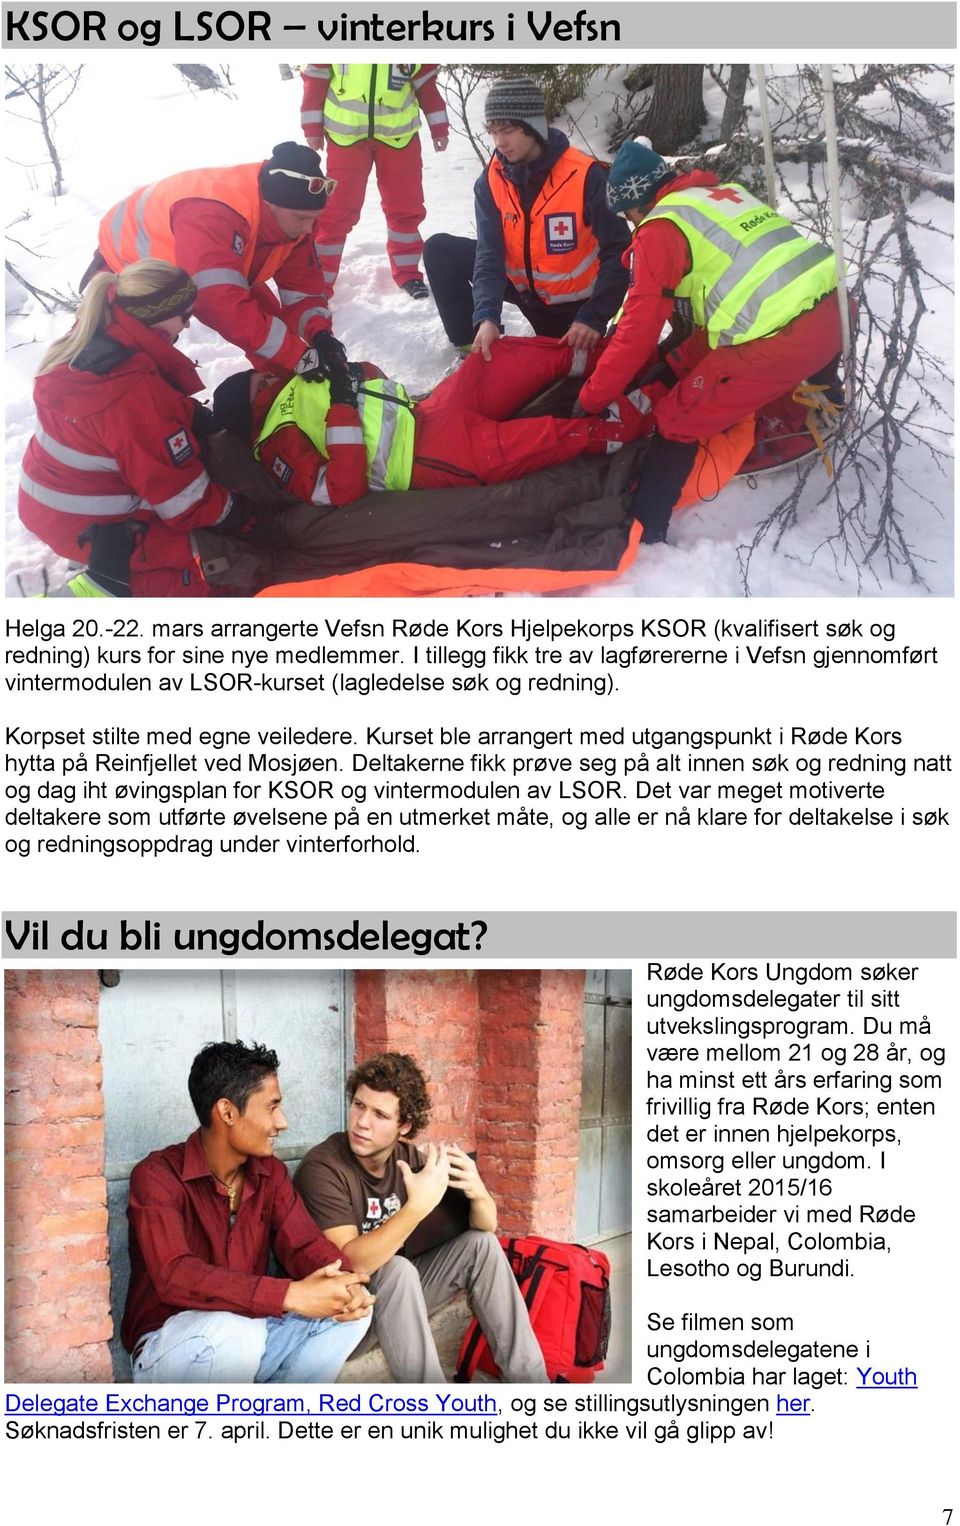 Kurset ble arrangert med utgangspunkt i Røde Kors hytta på Reinfjellet ved Mosjøen. Deltakerne fikk prøve seg på alt innen søk og redning natt og dag iht øvingsplan for KSOR og vintermodulen av LSOR.